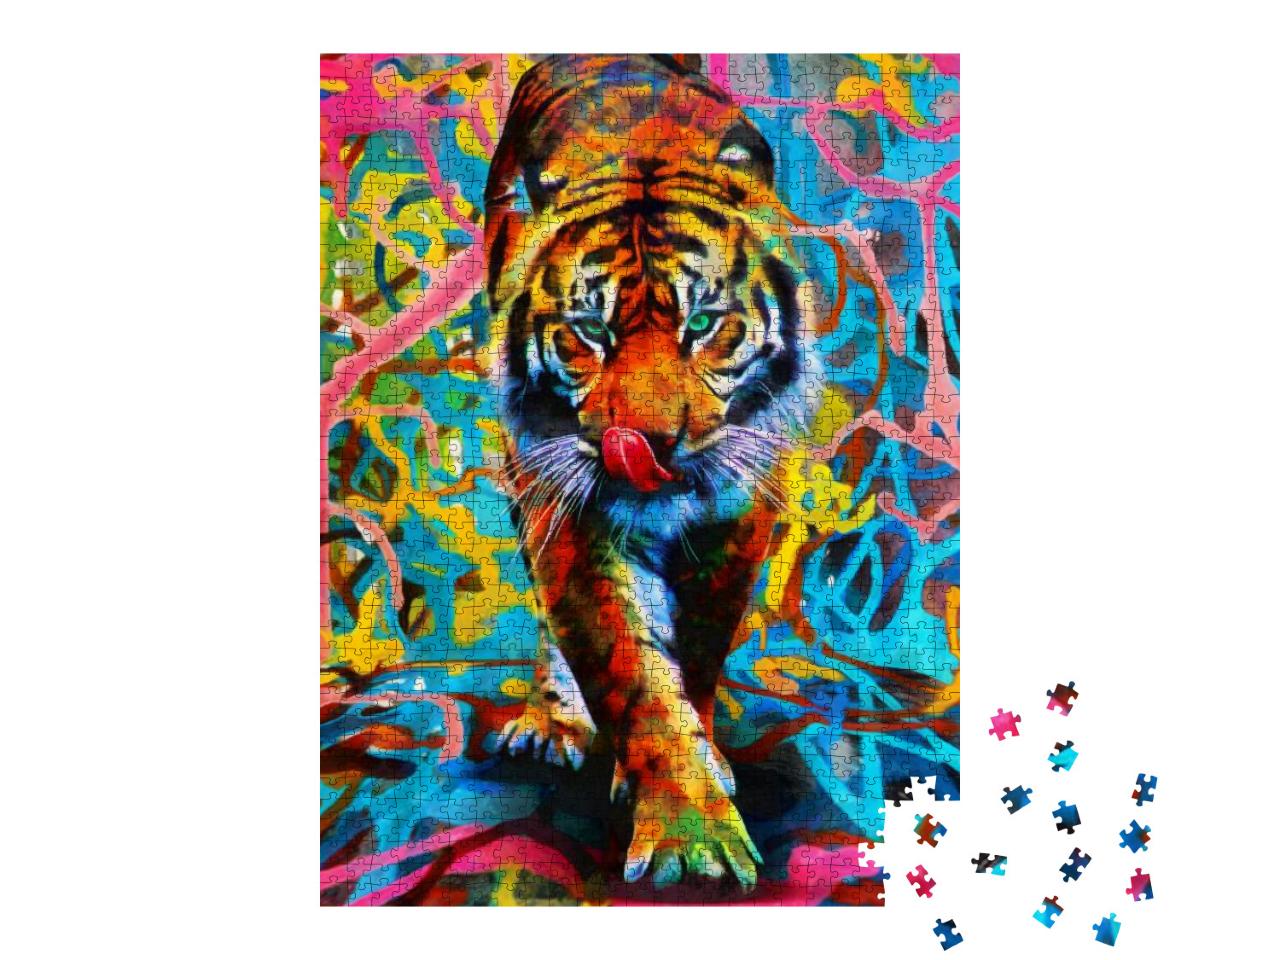 Puzzle 1000 Teile „Tiger in bunten Farben“